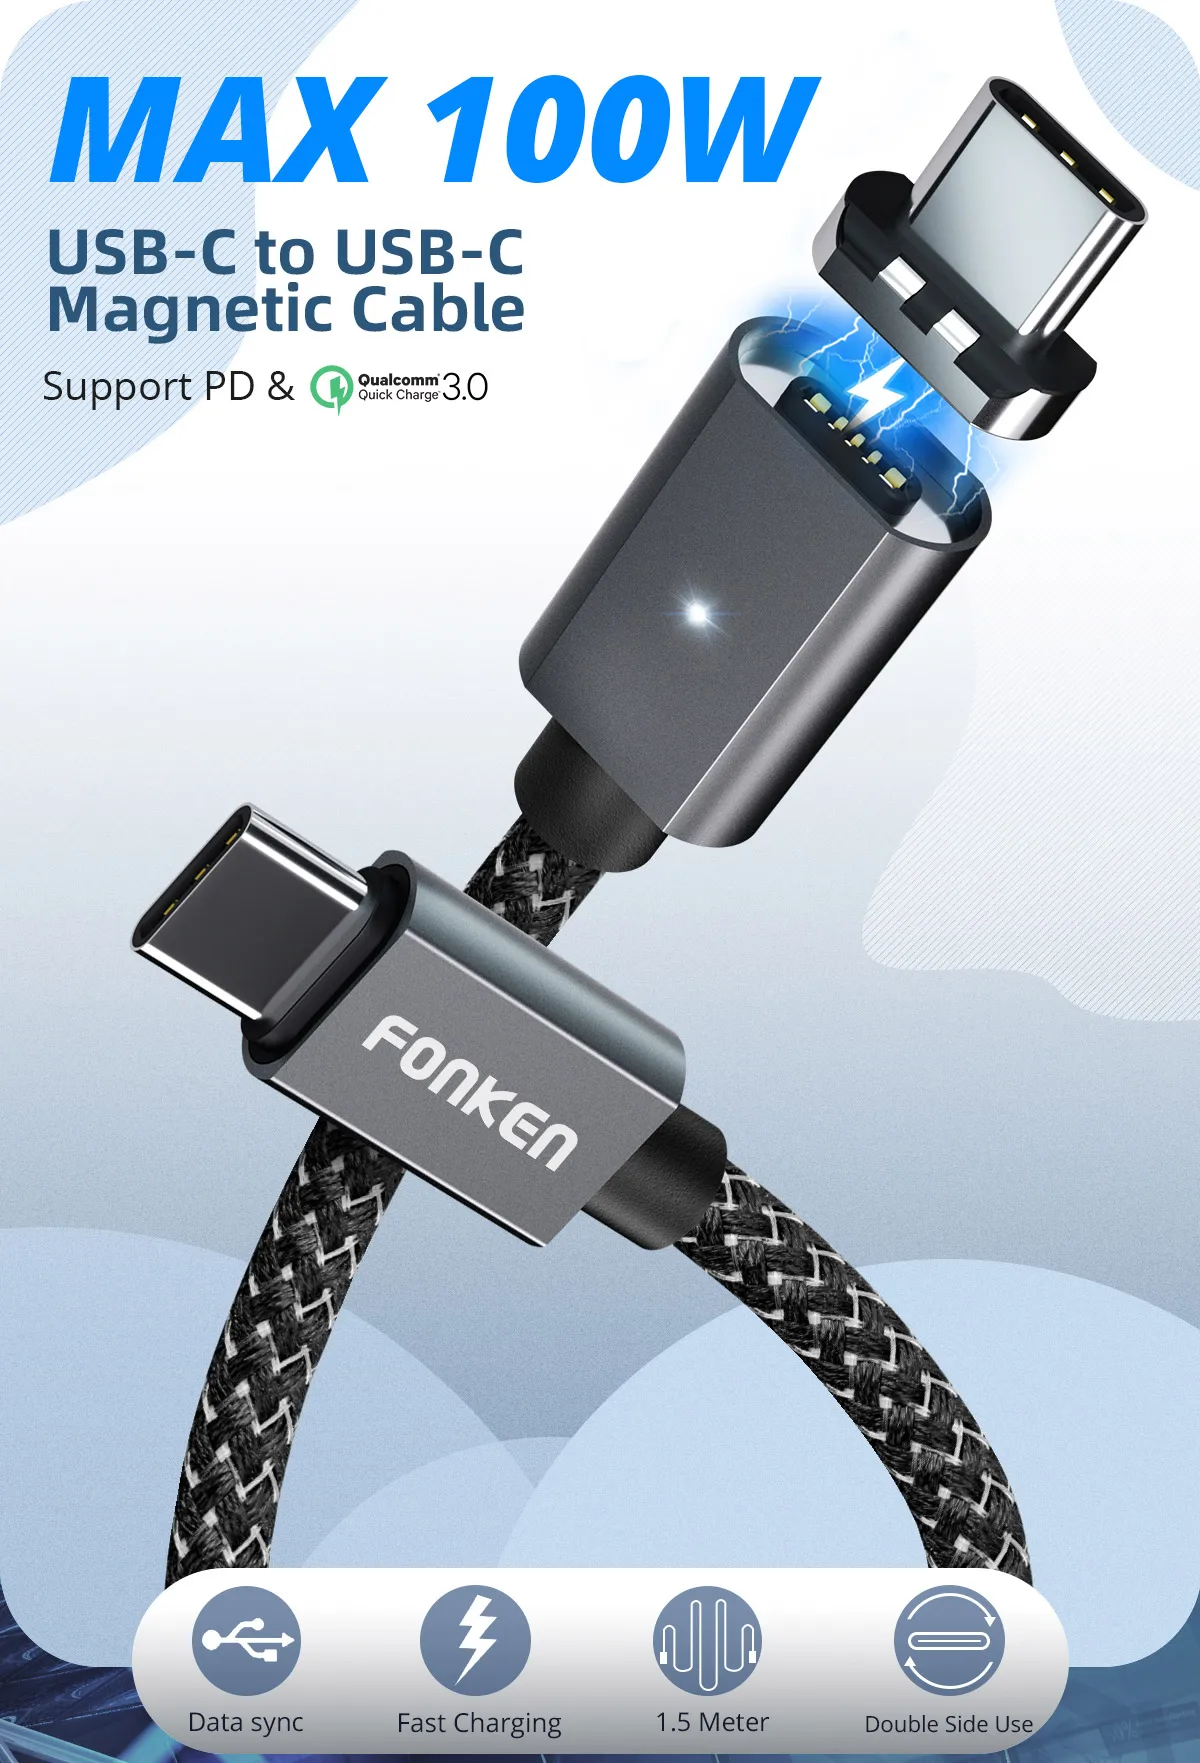 Магнитный кабель FONKEN usb type C To type C кабель 20 в 5A Быстрая зарядка USB C зарядка кабелей для телефона ноутбука PD шнур зарядного устройства